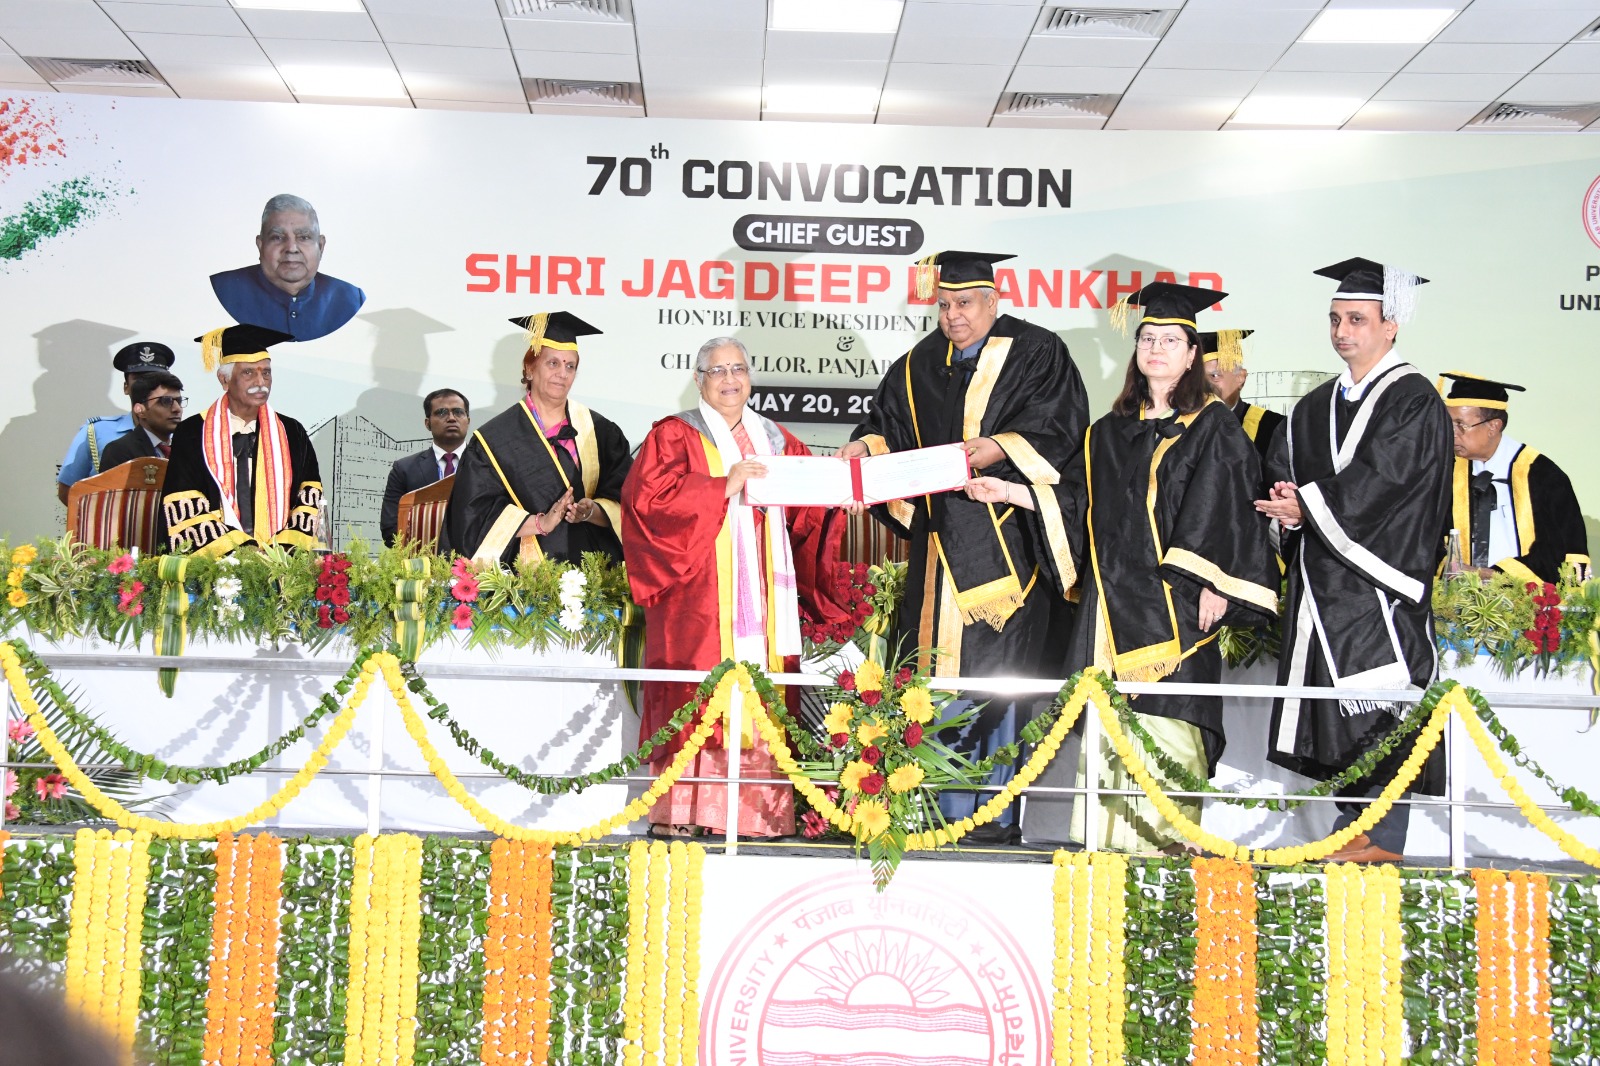 राज्यपाल श्री बंडारू दत्तात्रेय पंजाब विश्वविद्यालय, चण्डीगढ़ के 70वें दीक्षांत समारोह में भारत के उप-राष्ट्रपति एवं पंजाब विश्वविद्यालय के कुलाधिपति श्री जगदीप धनखड़ व उनकी धर्मपत्नी श्रीमति सुदेश धनखड़ के साथ कार्यक्रम में भाग लेते हुए